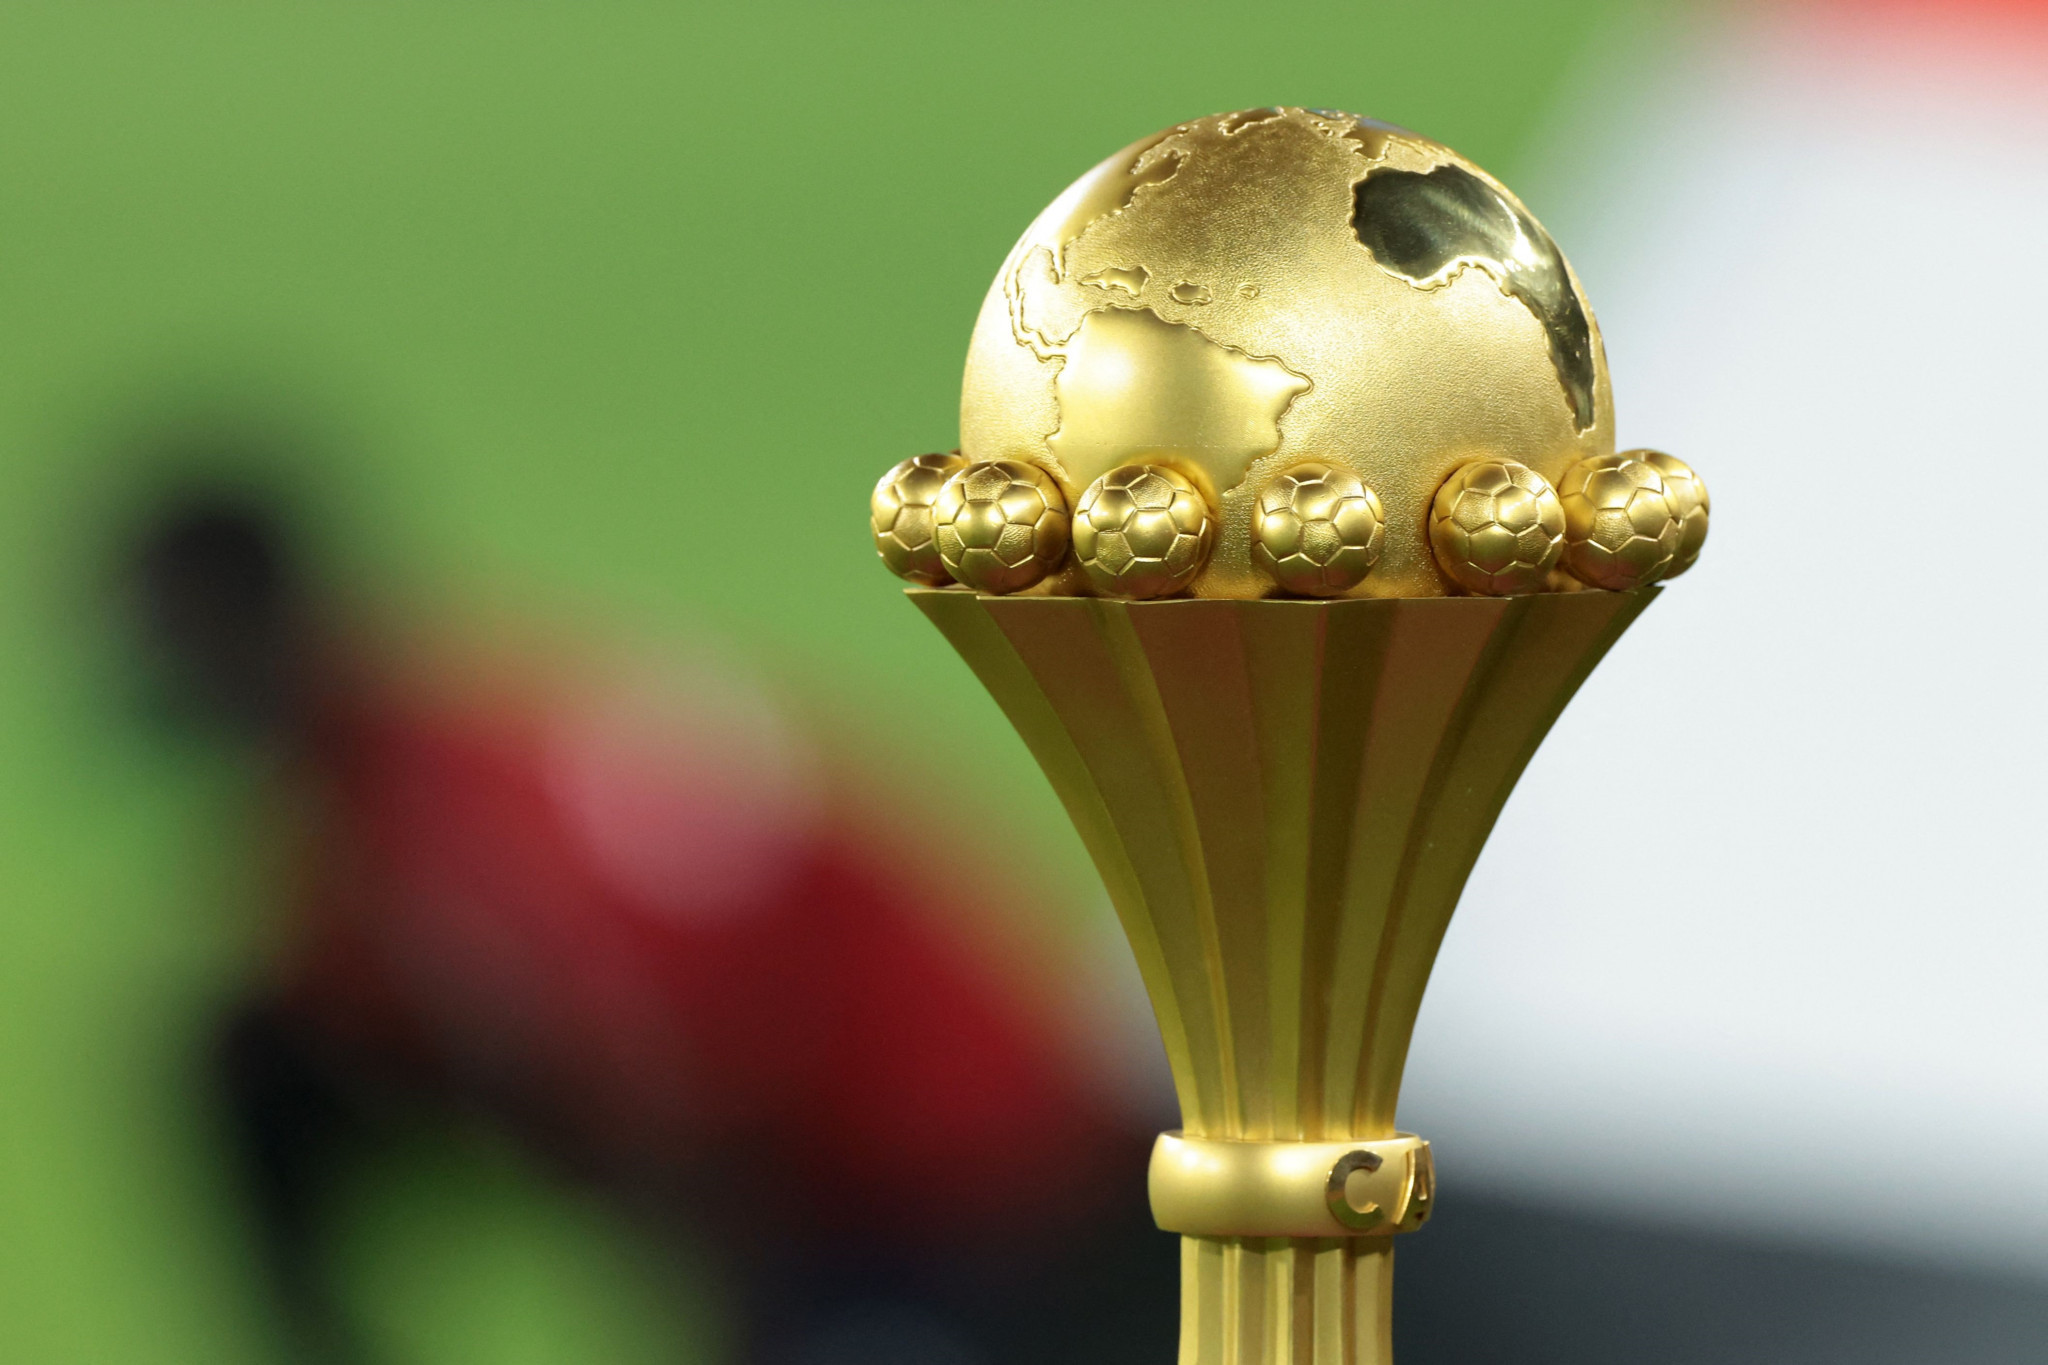 أربعة ترشيحات من ست دول تتنافس لاستضافة كأس الأمم الأفريقية 2027